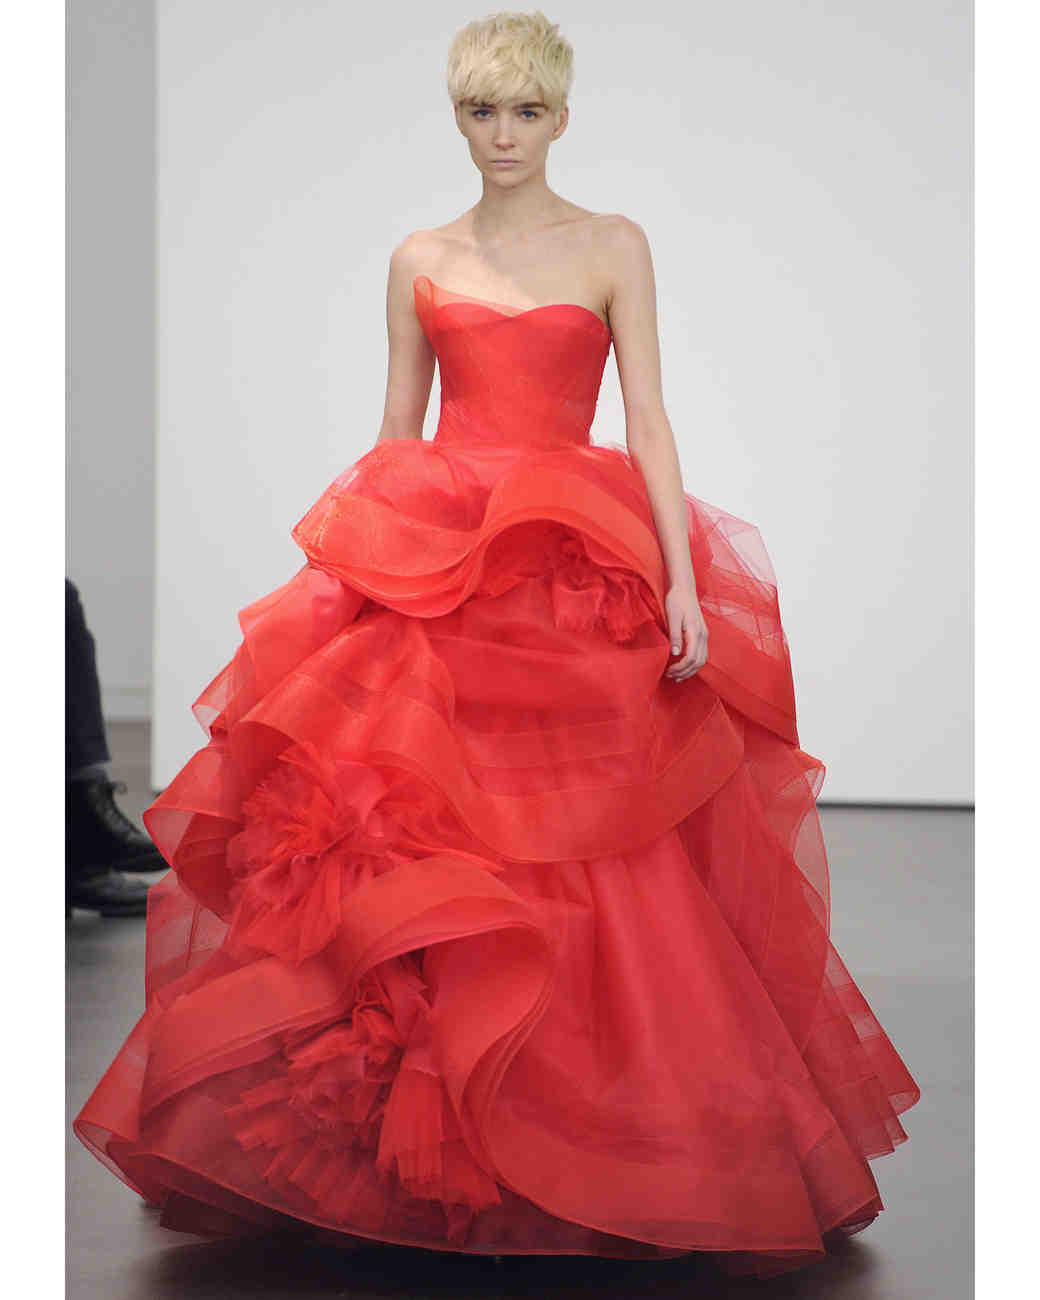 Red Wedding Dresses, Spring 2013 Bridal Fashion Week | Martha Stewart ...